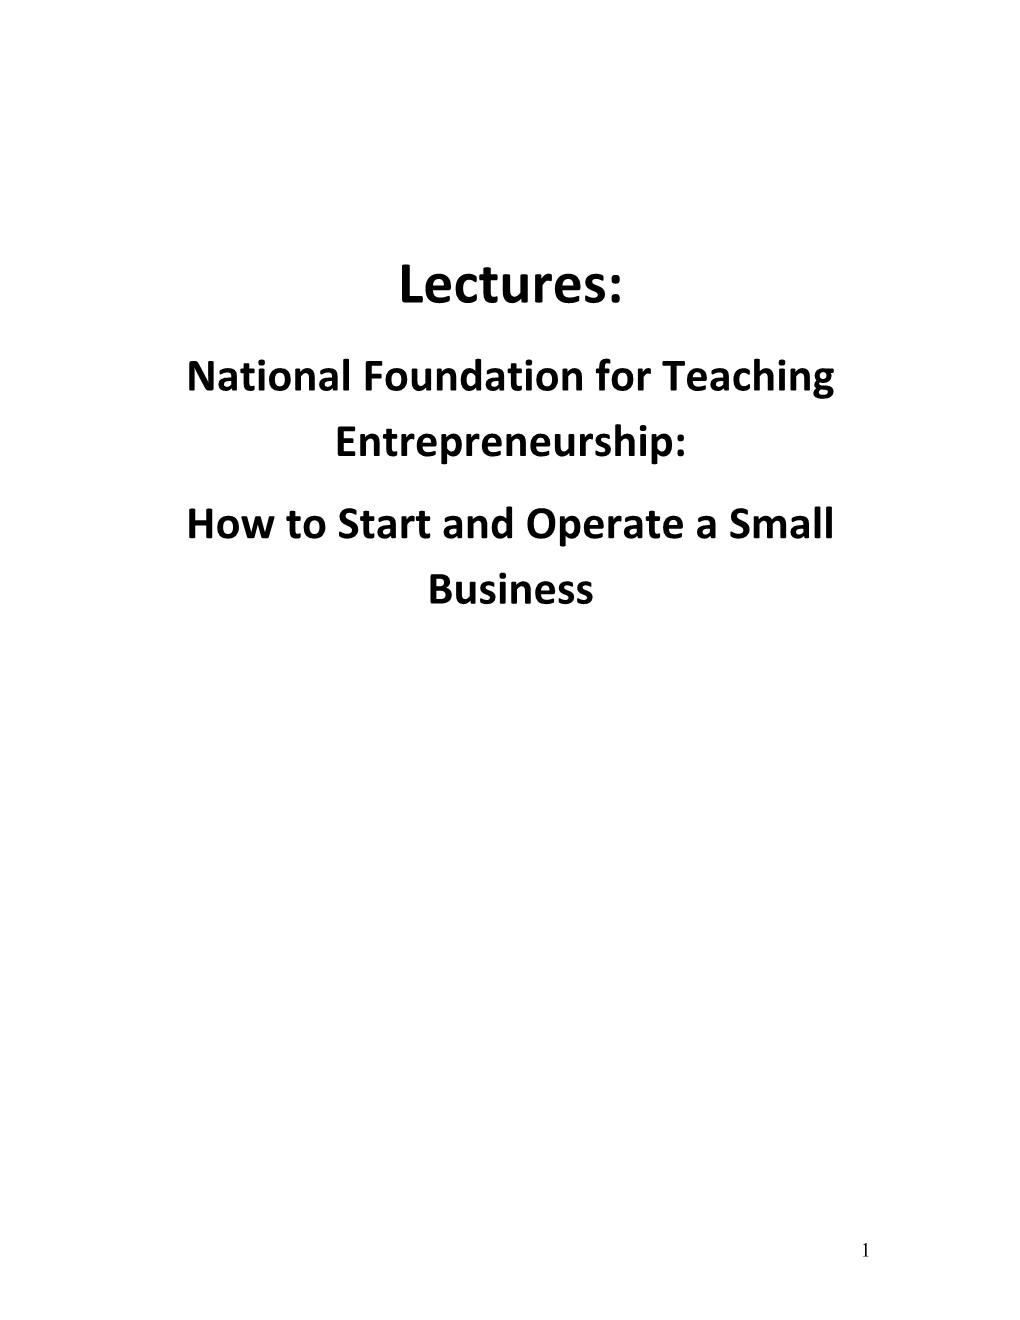 National Foundation for Teaching Entrepreneurship